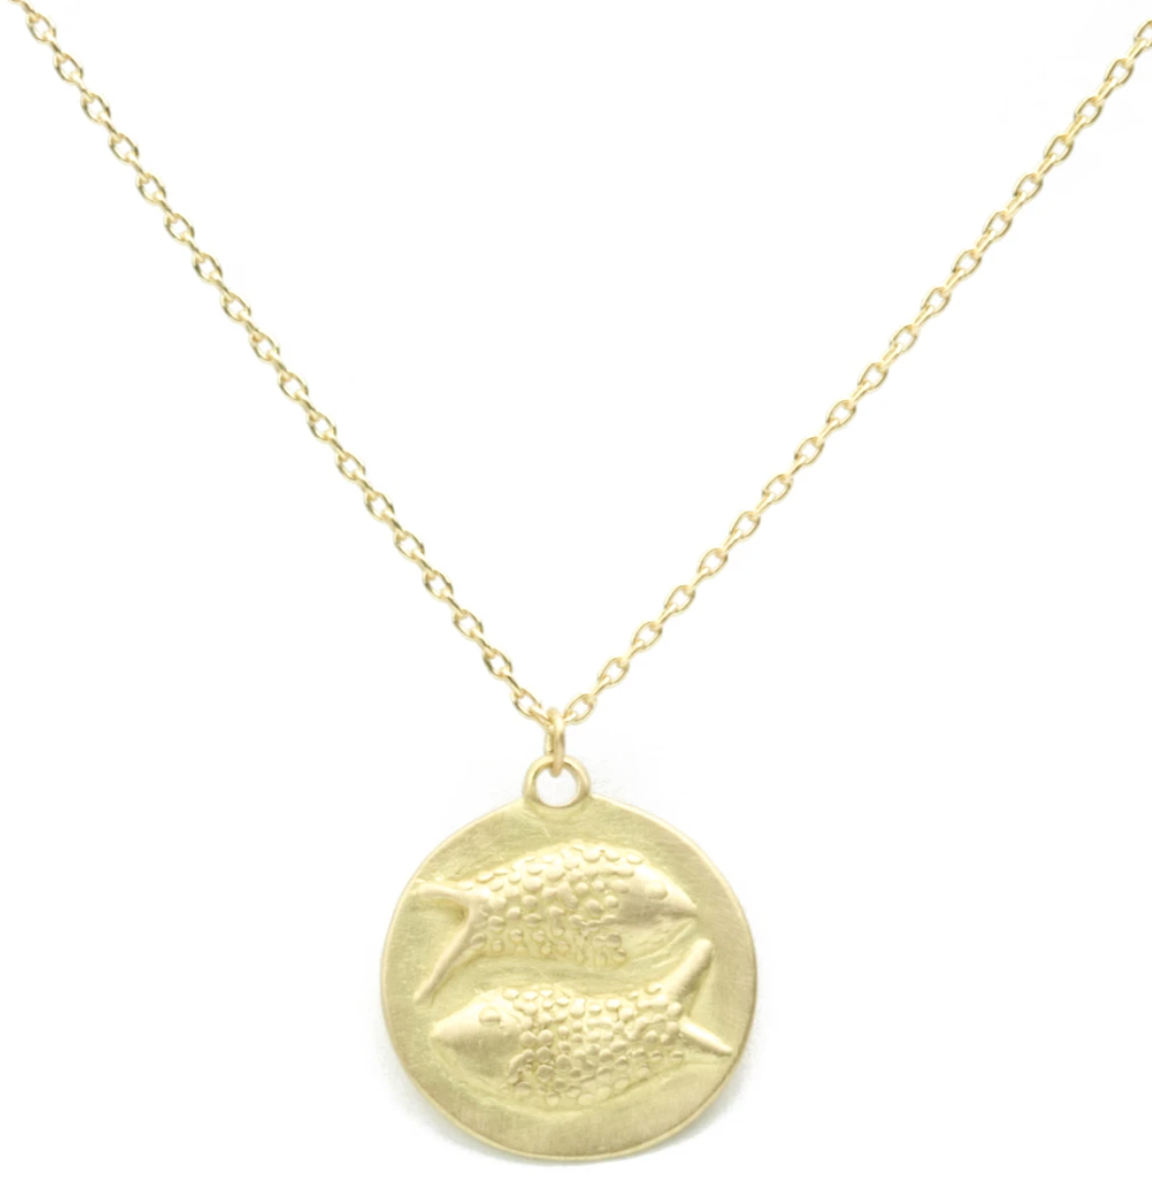 18KY Zodiac Medal Necklace 18"